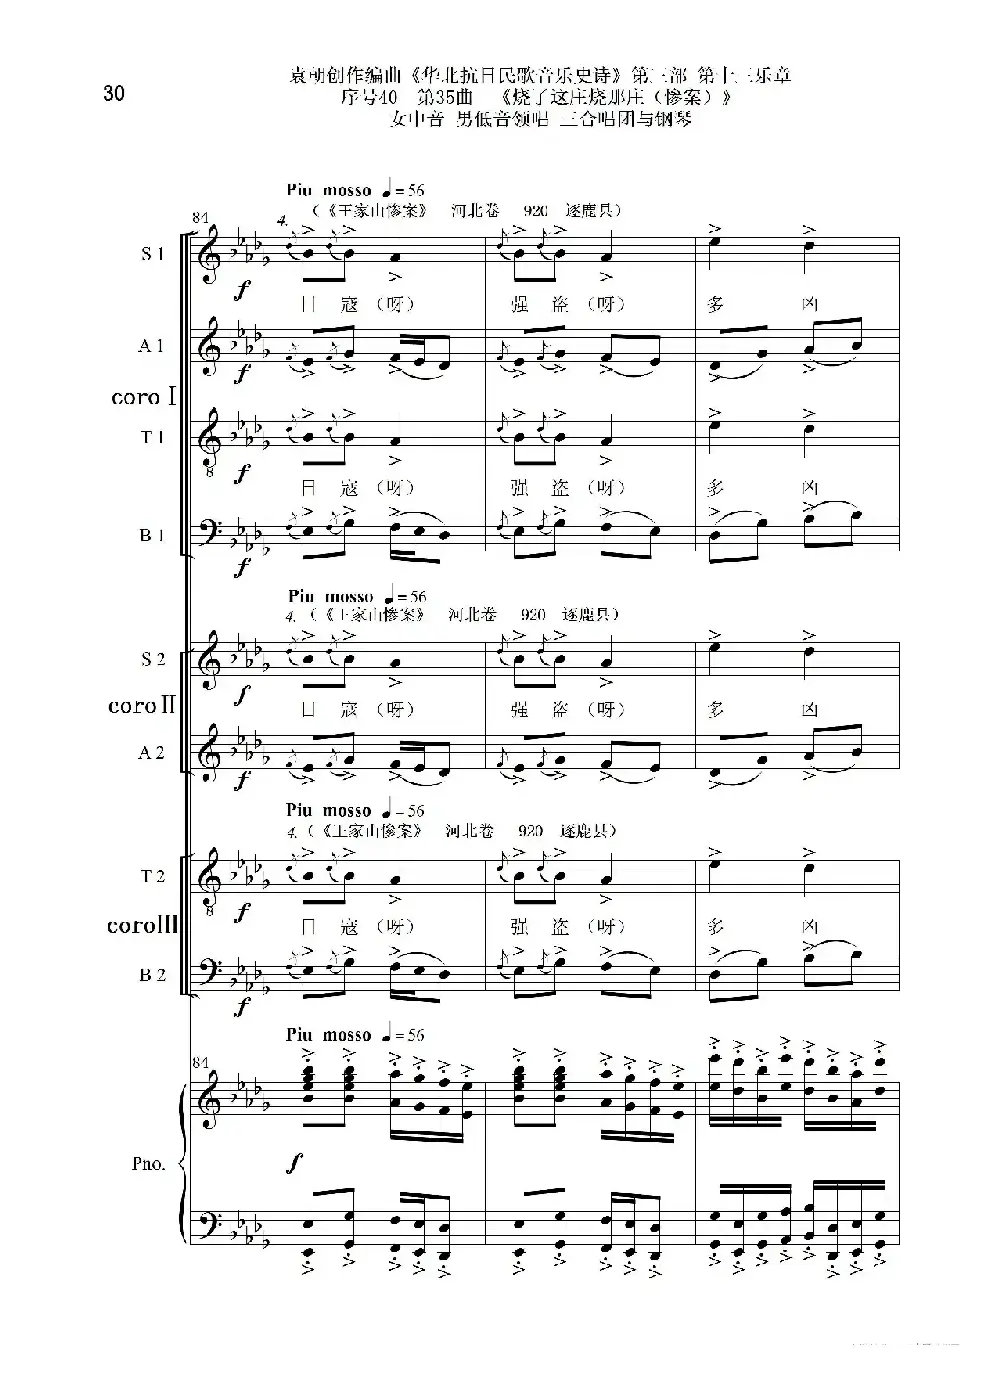 序号40第35曲《烧了这庄烧那庄（惨案）》女中音 男低音领唱 三合唱团与钢琴